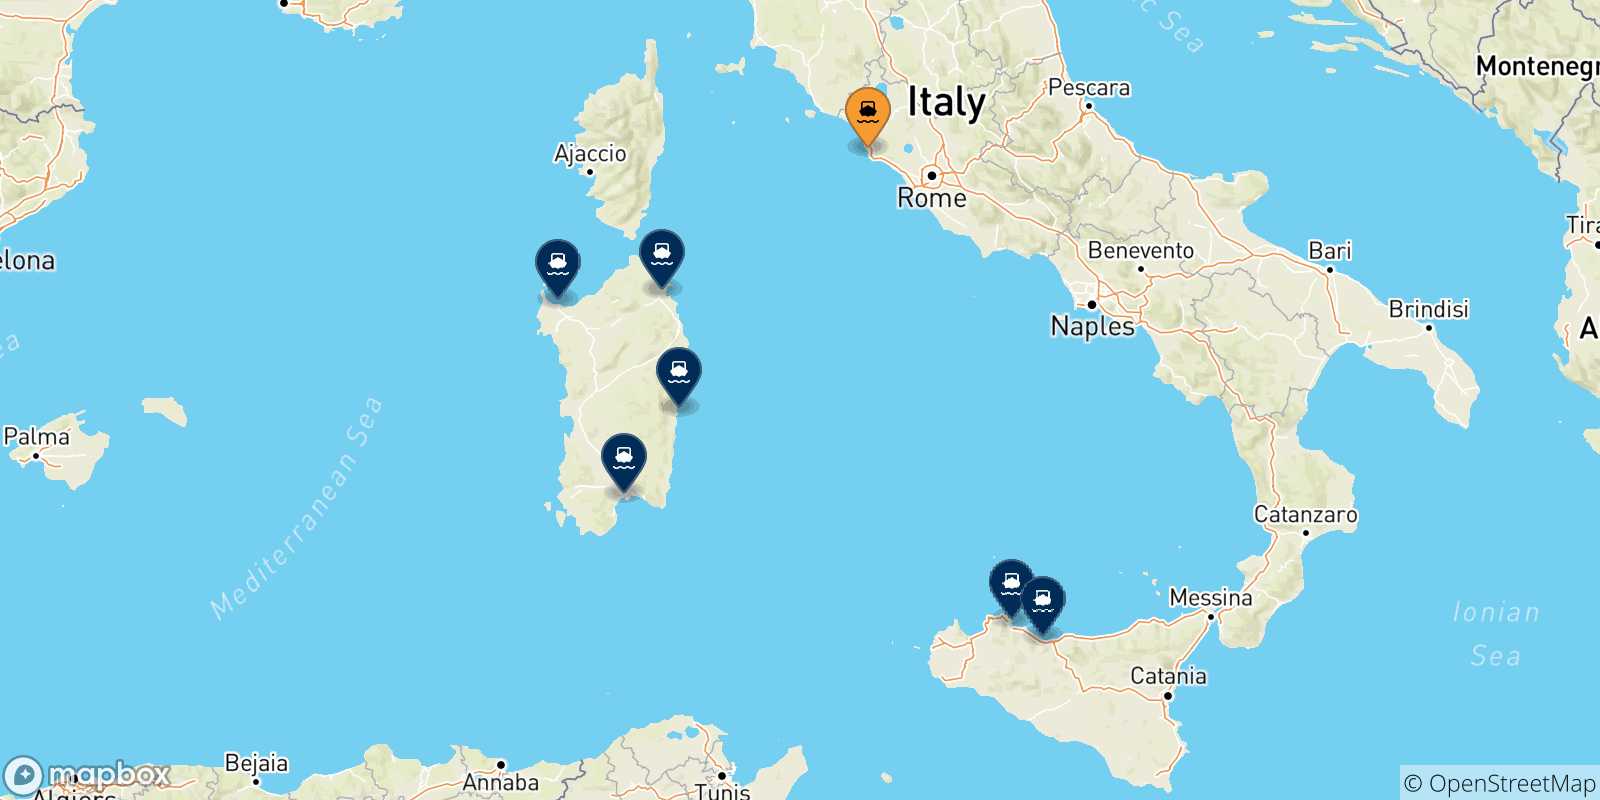 Mappa delle possibili rotte tra Civitavecchia e l'Italia